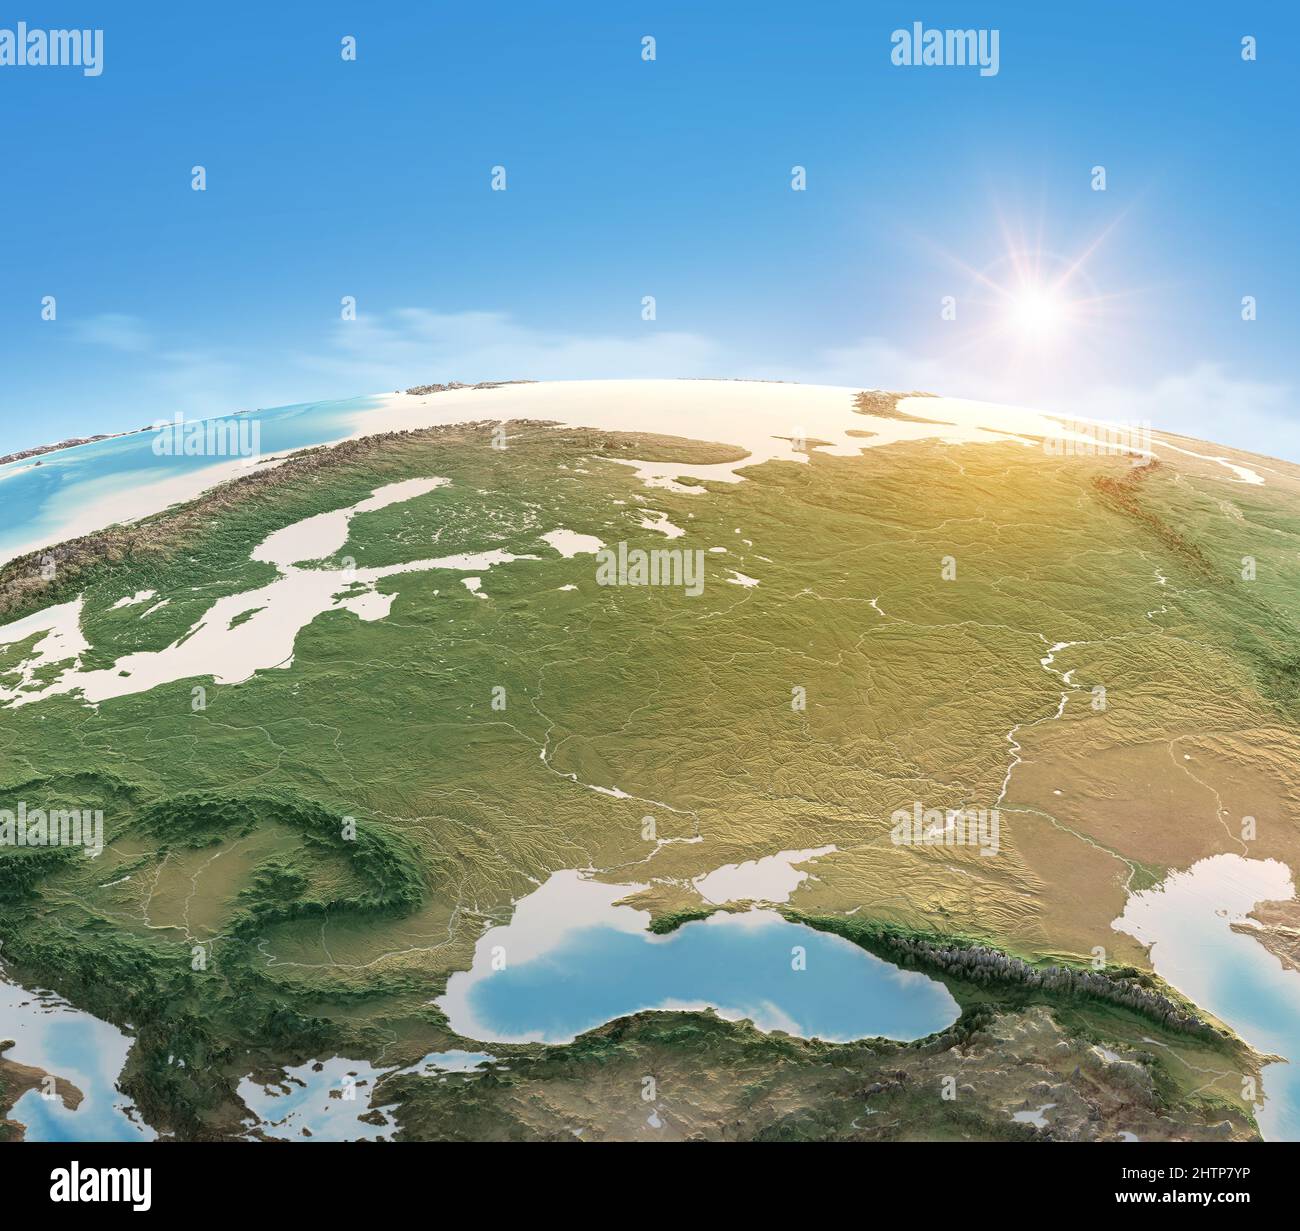 Carte physique de la planète Terre, Europe centrale et orientale ciblée. Vue par satellite, soleil éclatant à l'horizon. Éléments fournis par la NASA Banque D'Images